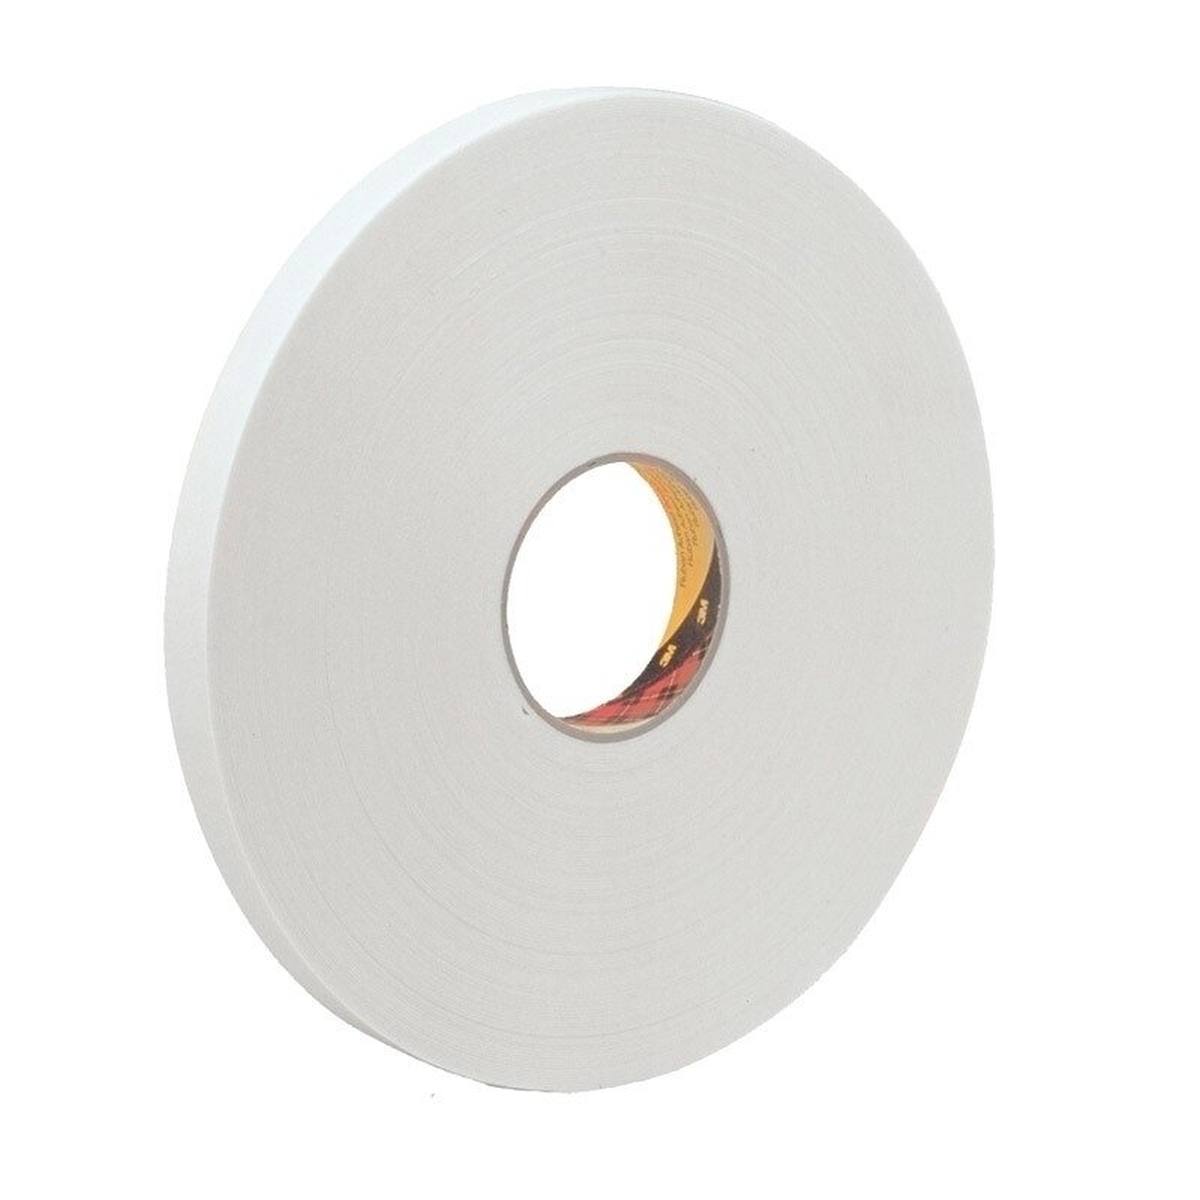 3M ruban adhésif mousse PE avec adhésif acrylique 9539, blanc, 9 mm x 66 m, 0,8 mm